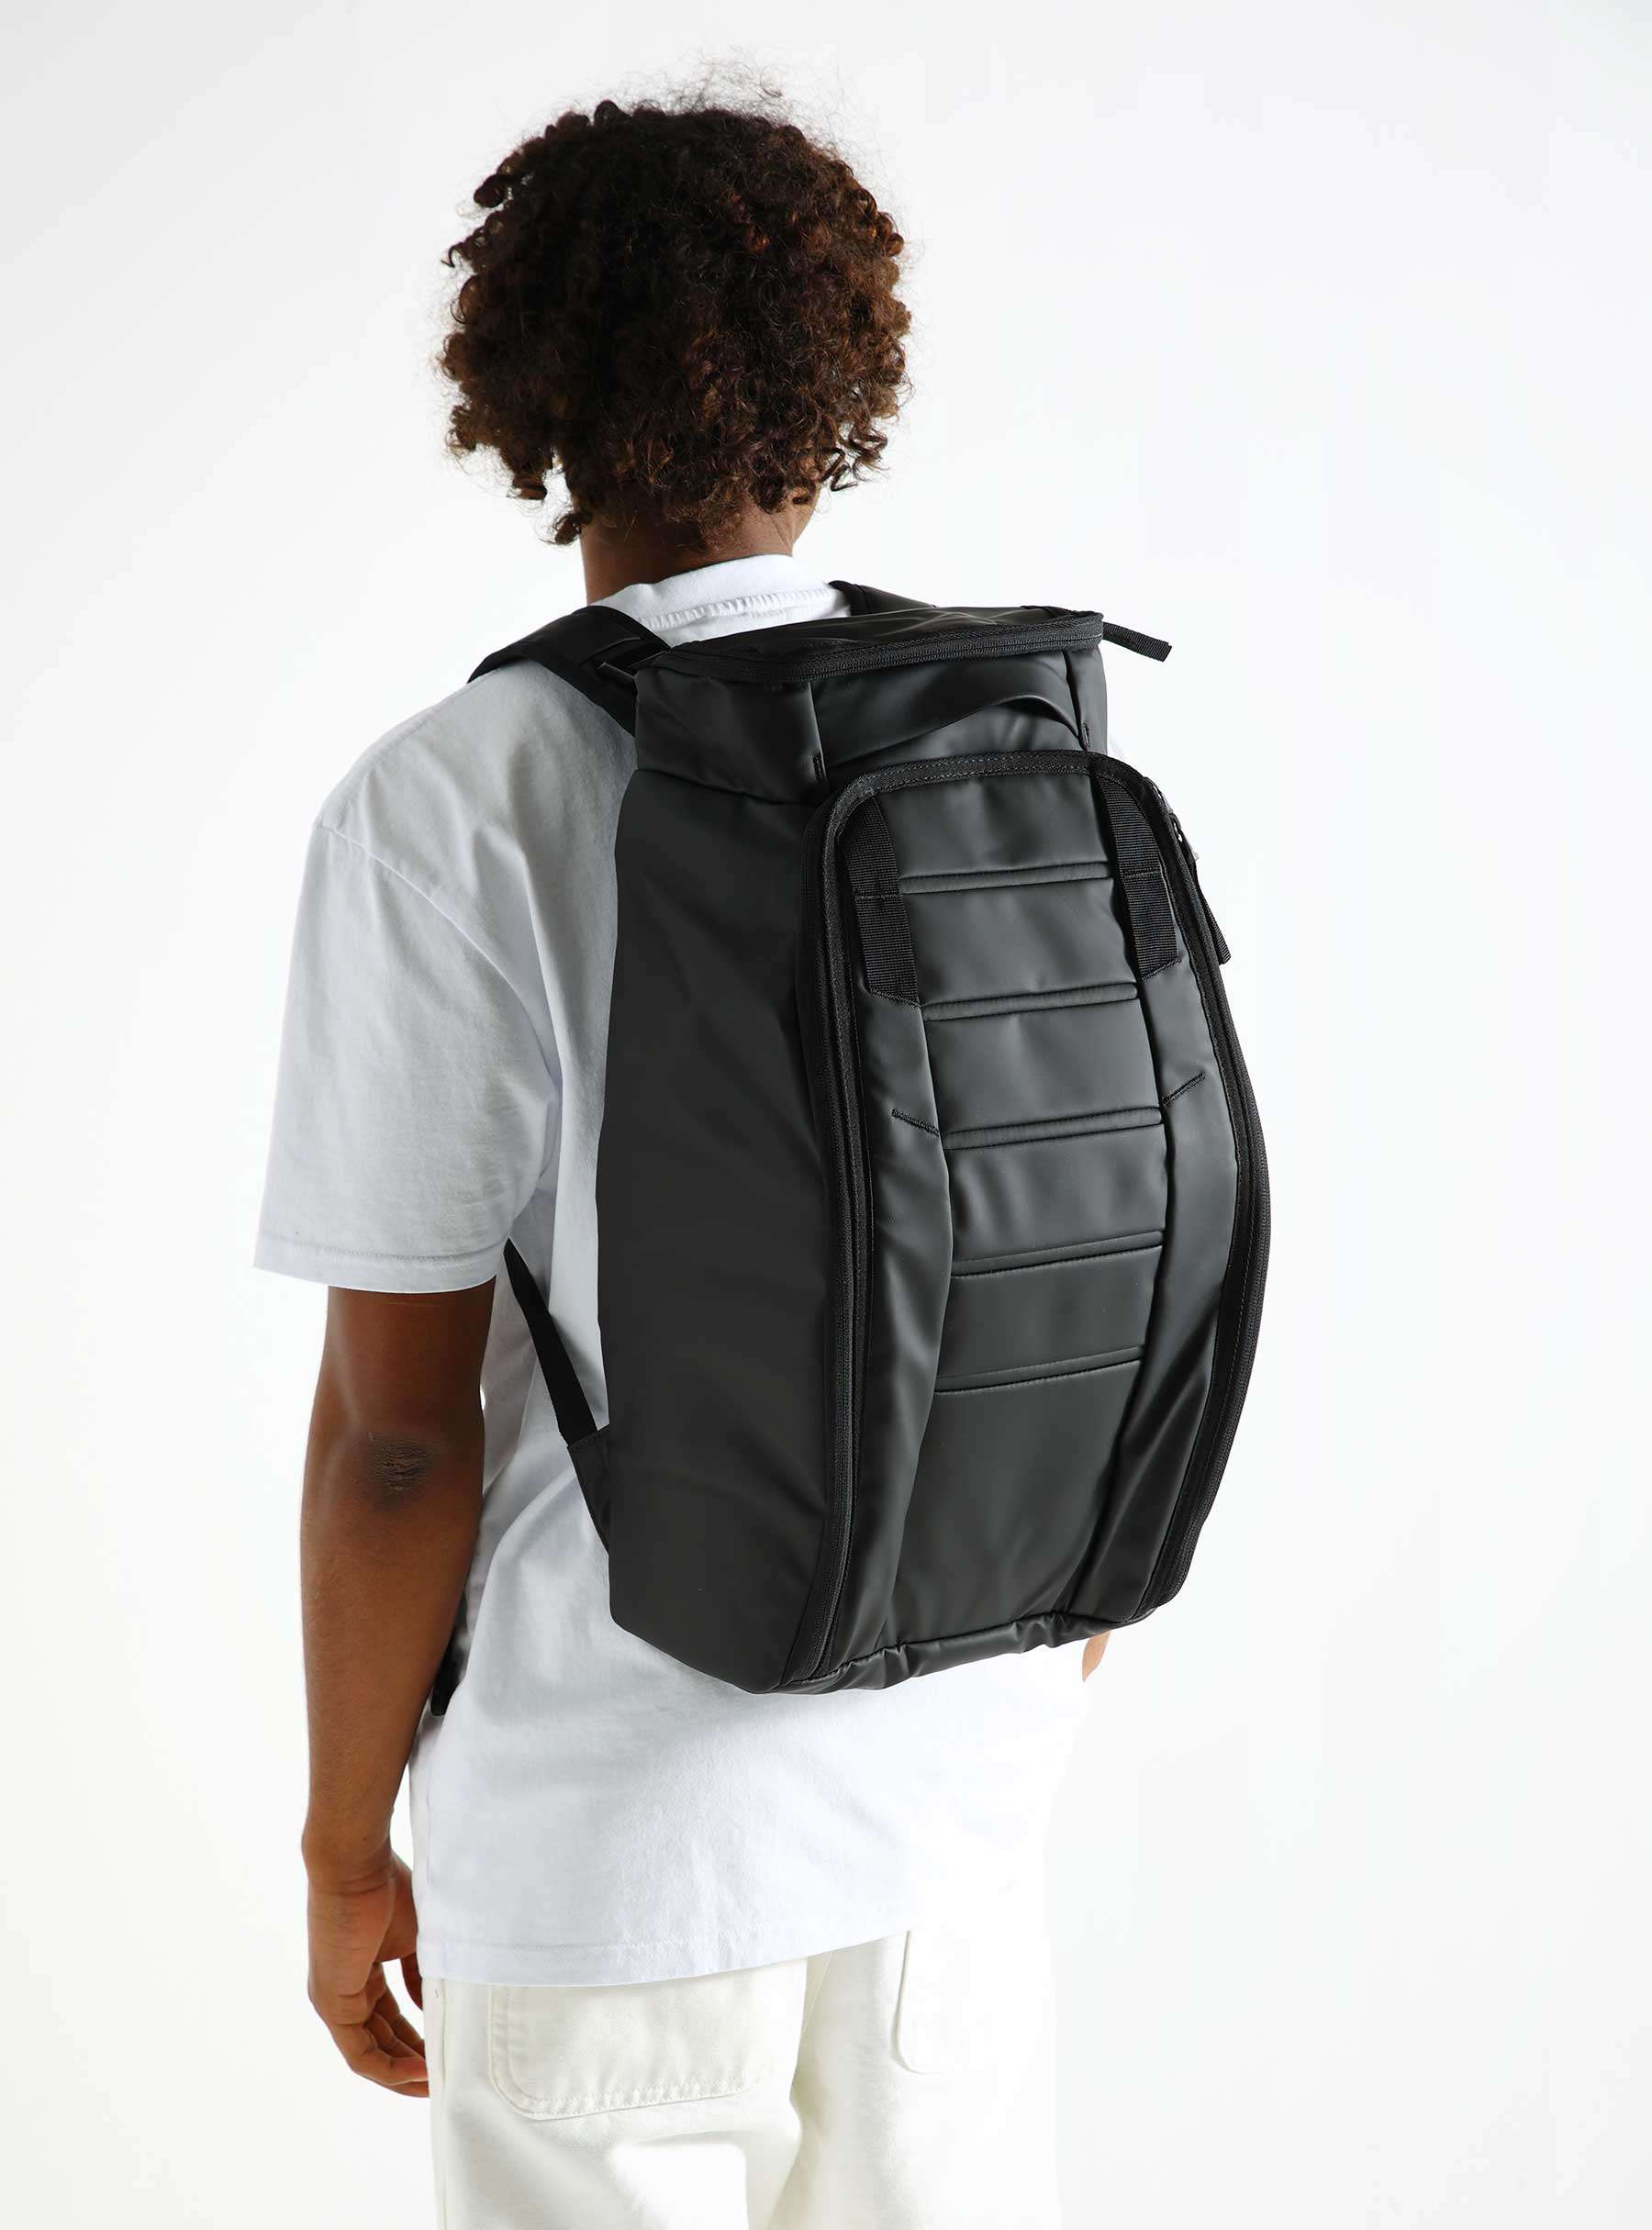 Hugger Backpack 25L Black Out 1000175004901